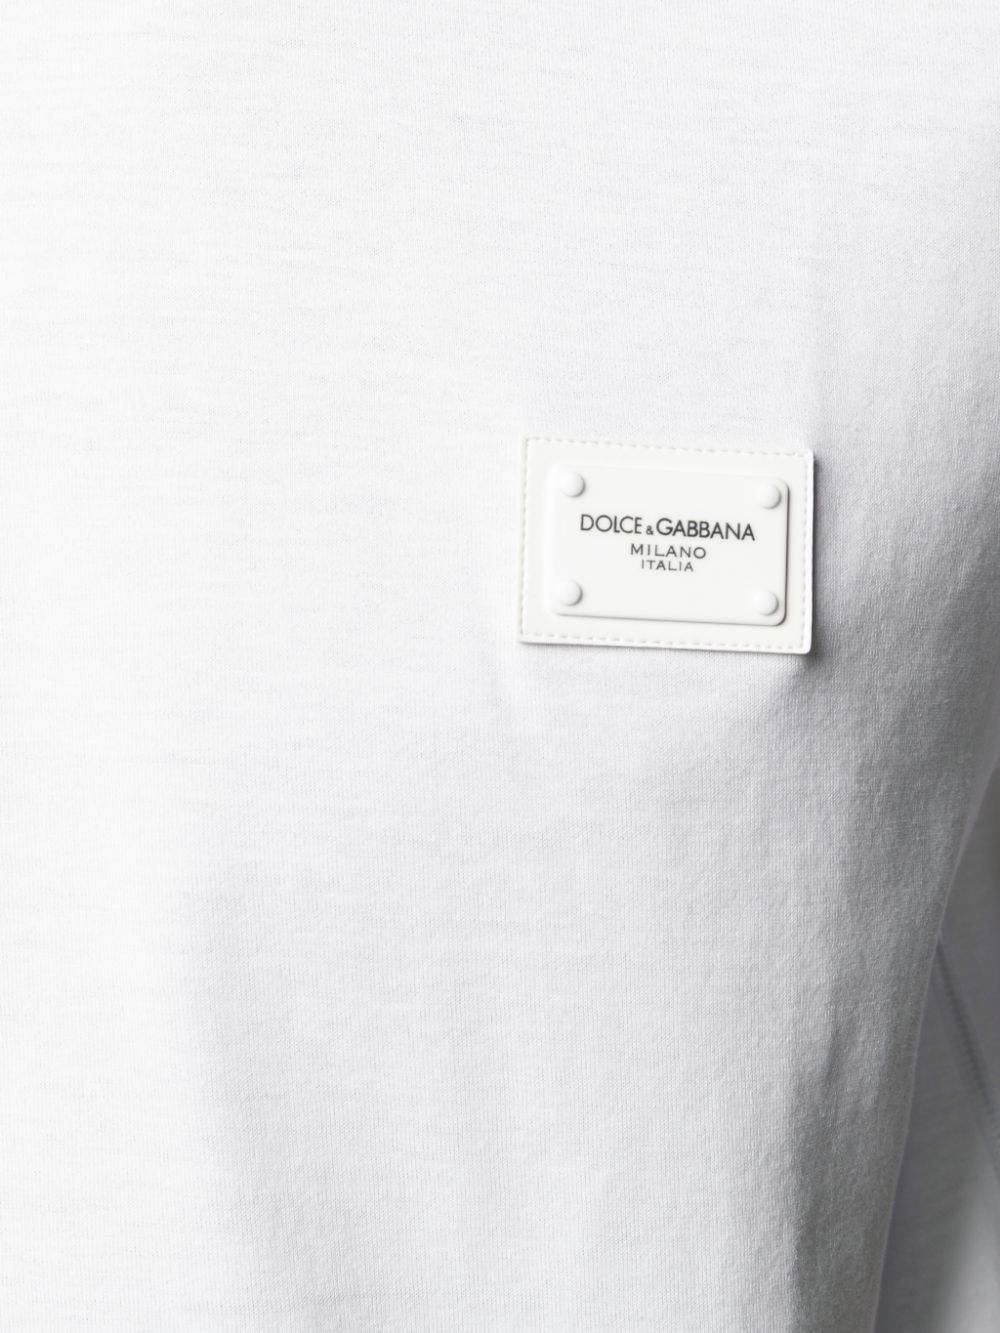 Dolce & GabbanaCotton T-shirt at Fashion Clinic